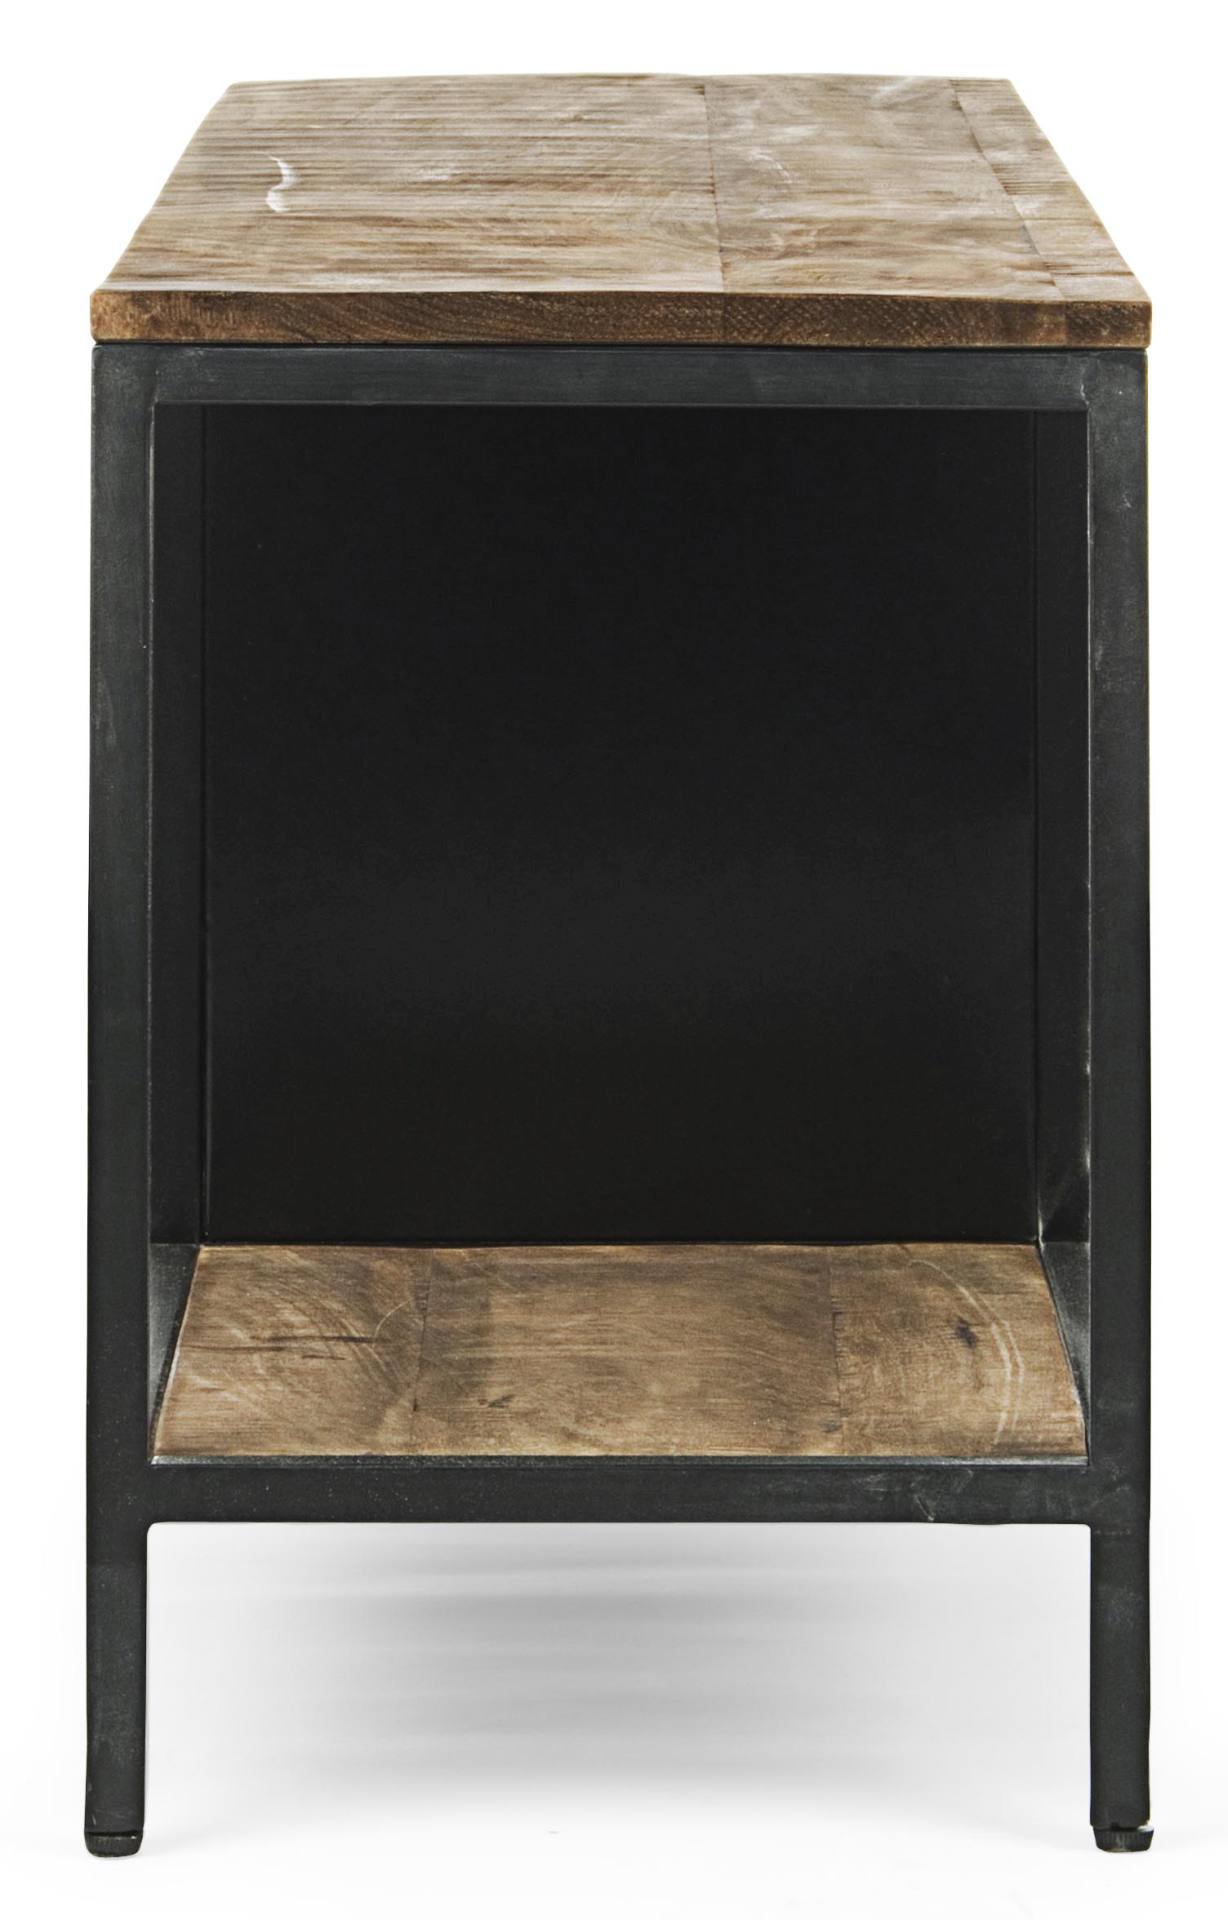 Das TV Board Roderic überzeugt mit seinem industriellen Design. Gefertigt wurde es aus Mangoholz, welches einen natürlichen Farbton besitzt. Das Gestell ist aus Metall und hat eine schwarze Farbe. Das TV Board verfügt über zwei Türen und ein Fach. Die Bre